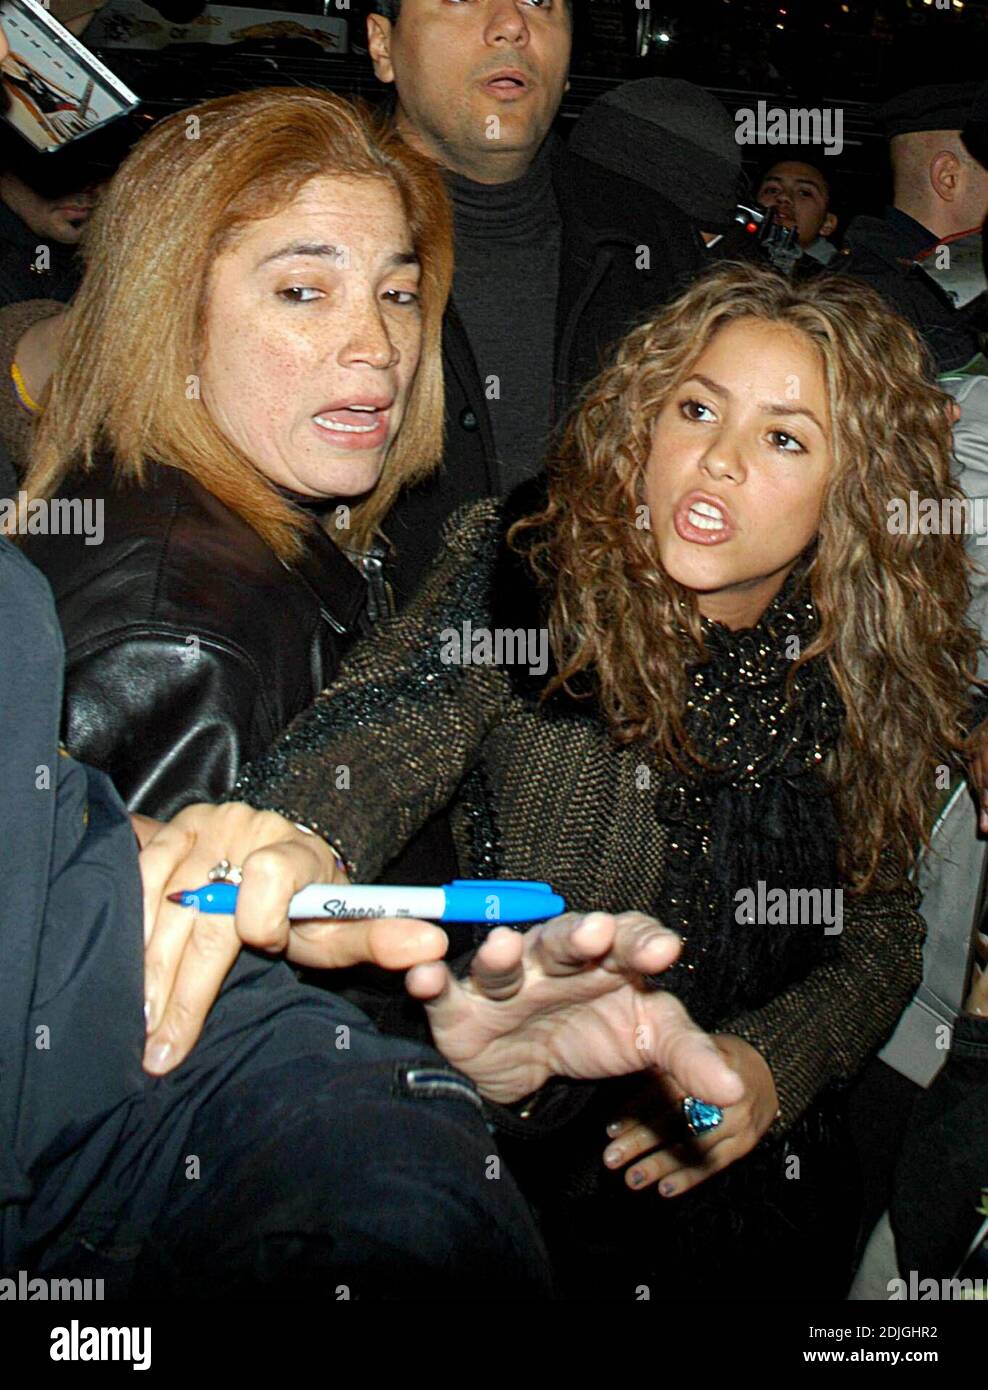 Shakira et Wyclef quittent TRL. Feisty Shakira s'est impliqué dans un match de jostling - New York, NY. 3/21/06 Banque D'Images